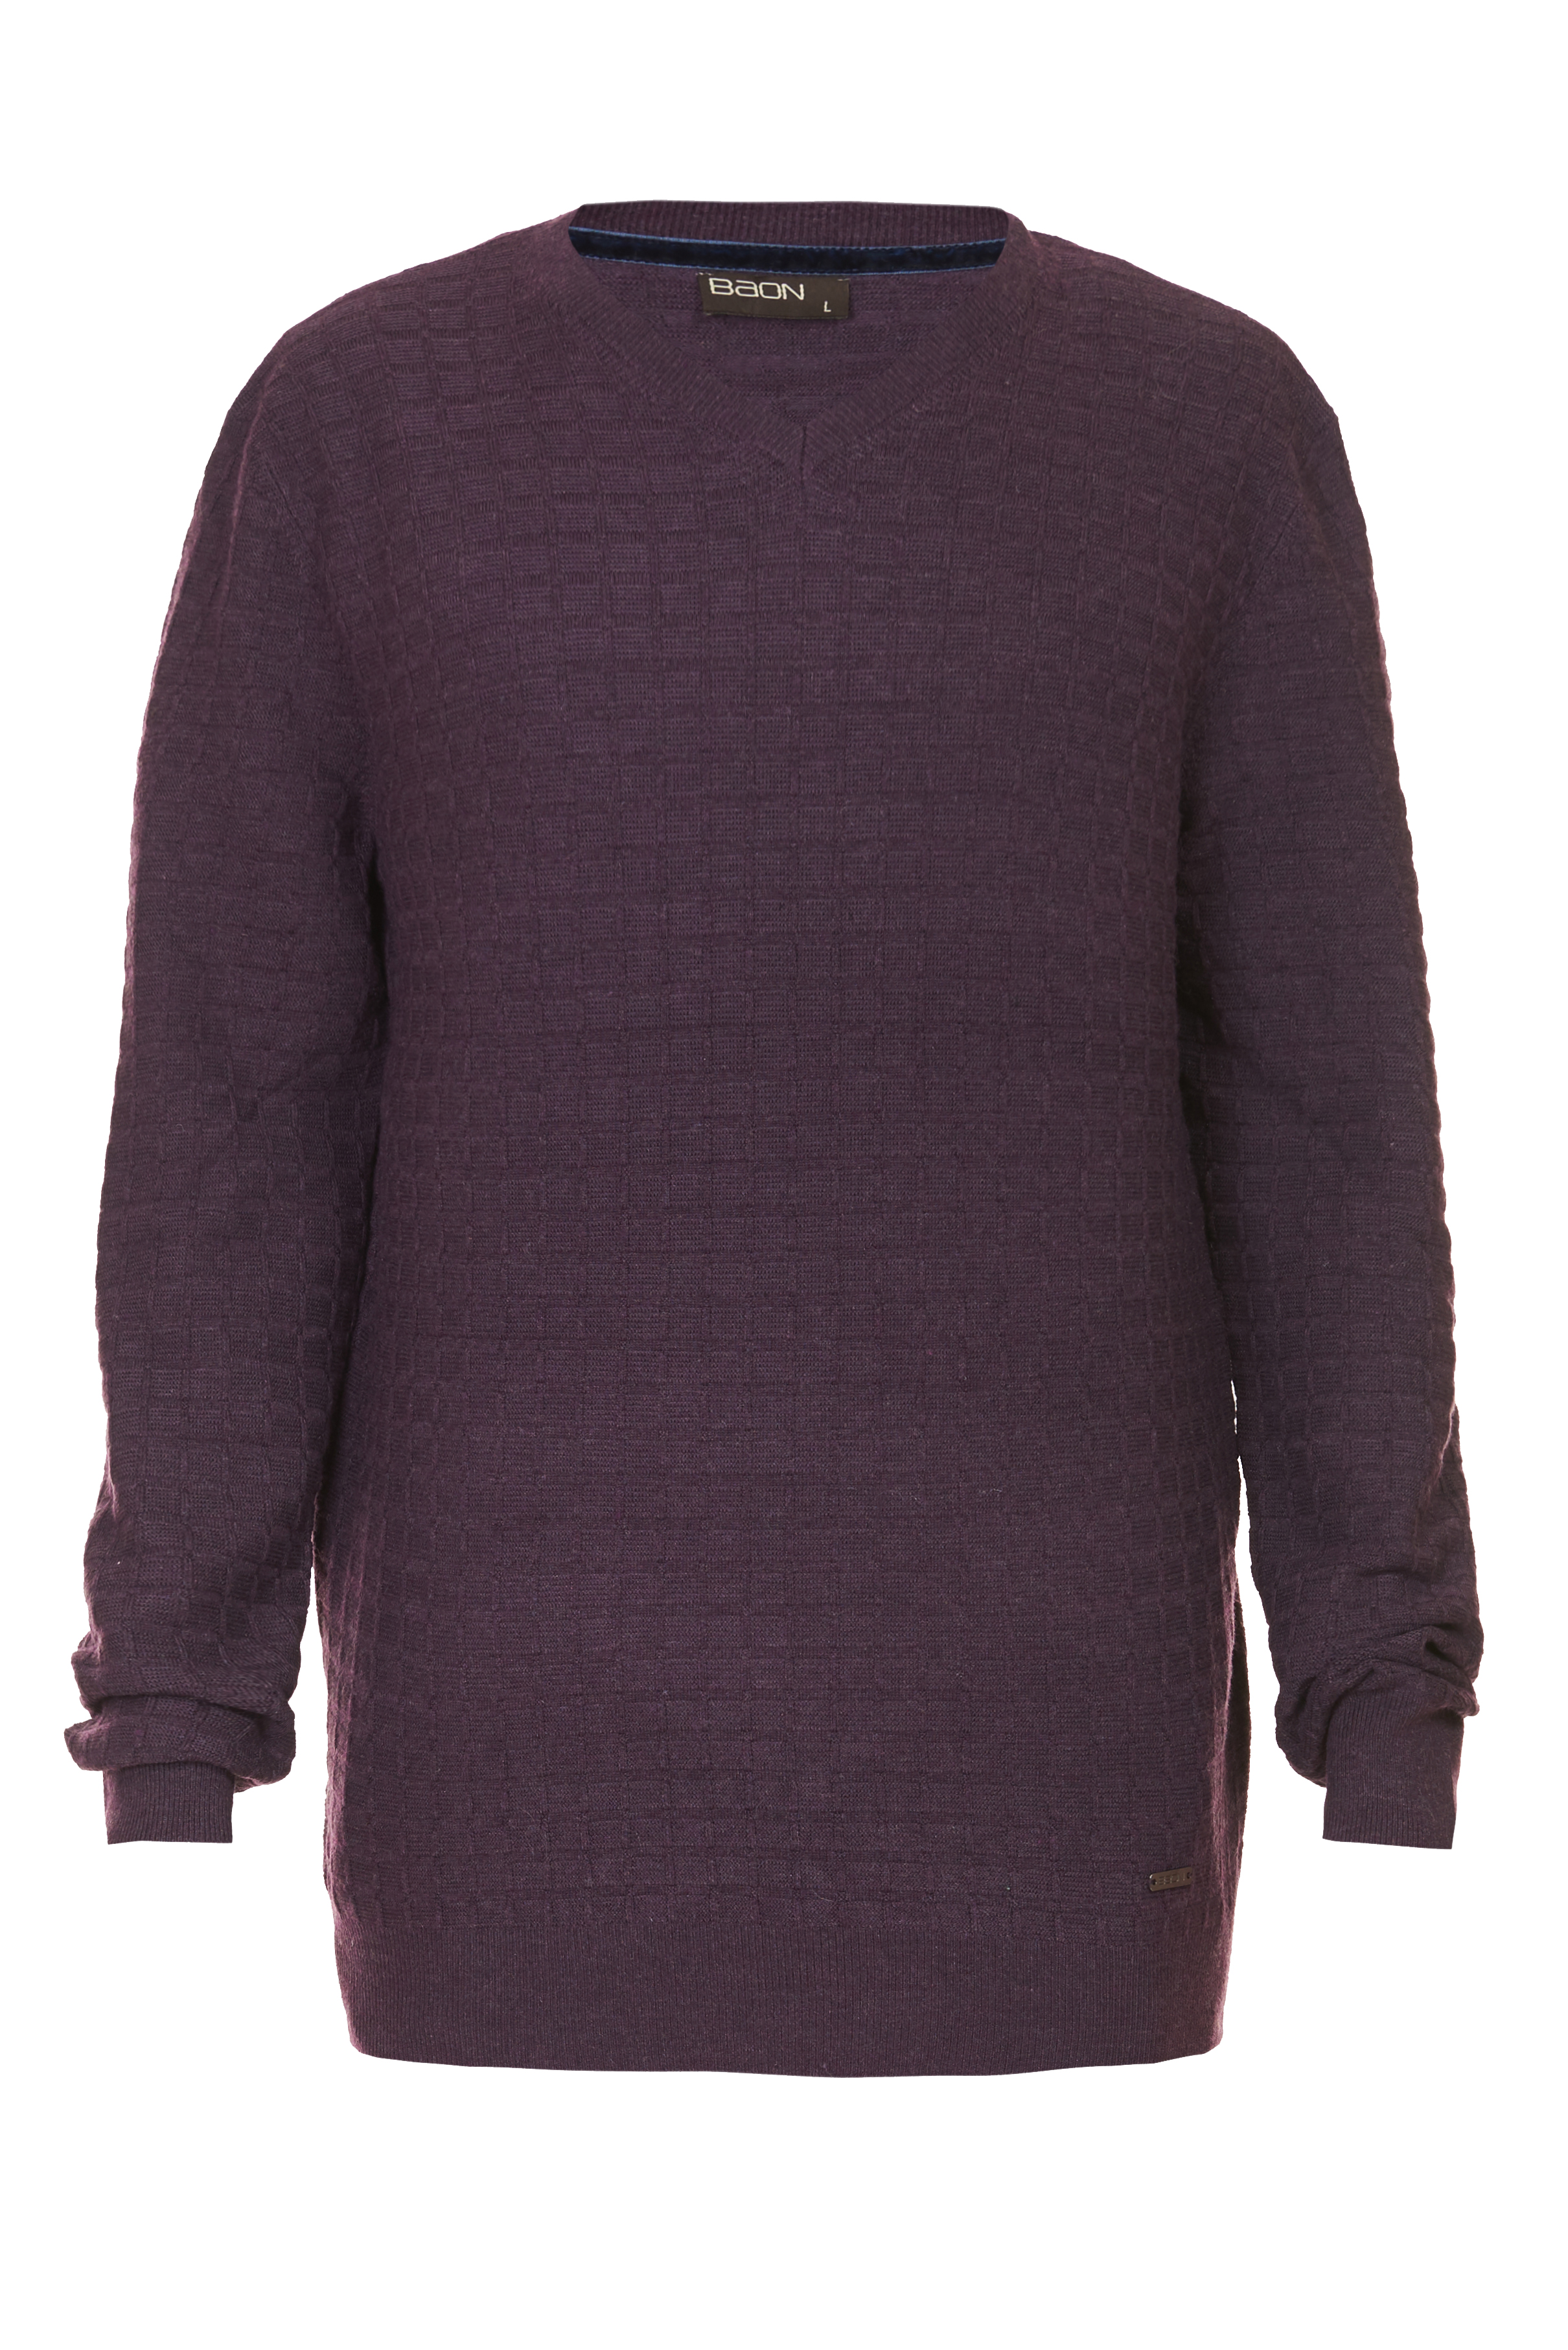 Пуловер с рельефным узором в клетку (арт. baon B637521), размер L, цвет фиолетовый Пуловер с рельефным узором в клетку (арт. baon B637521) - фото 3